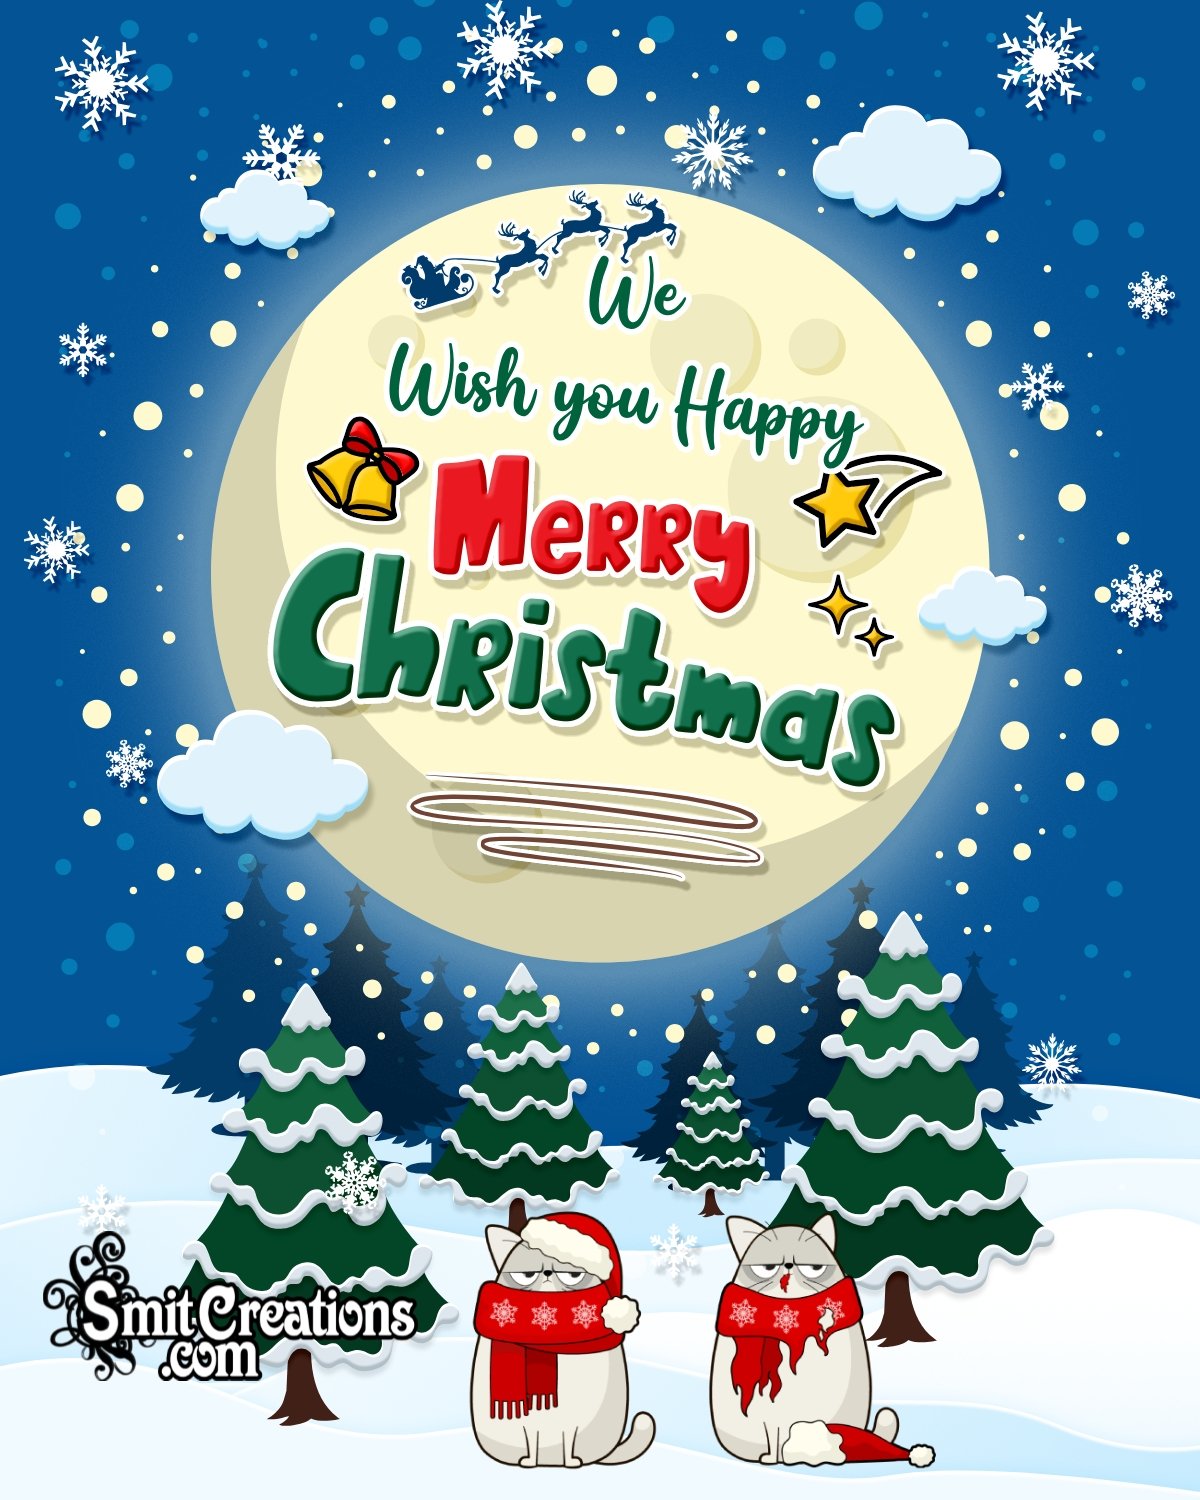 We Wish You Happy Christmas